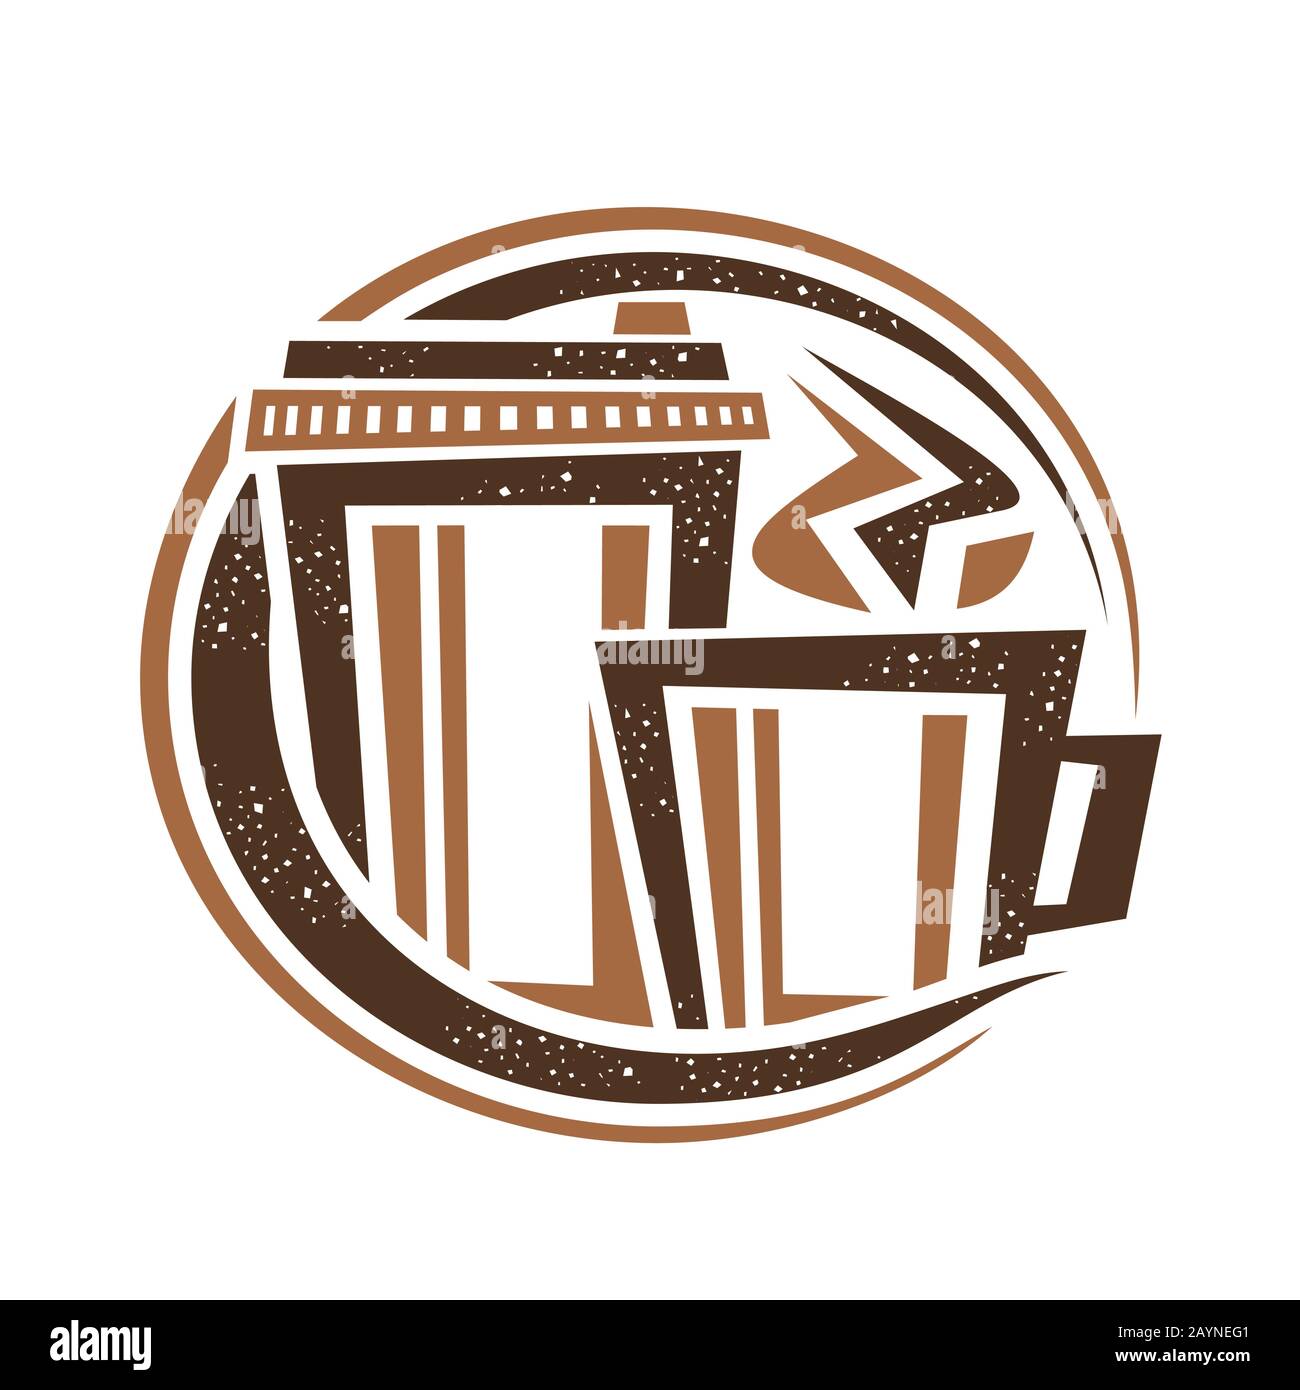 Vektorlogo für Kaffeegetränk, dekoratives rundes Hinweisschild für das Hippercafé mit umrissener Darstellung der gedämpften Kaffeetasse und wegnehmen von Pappbecher Stock Vektor